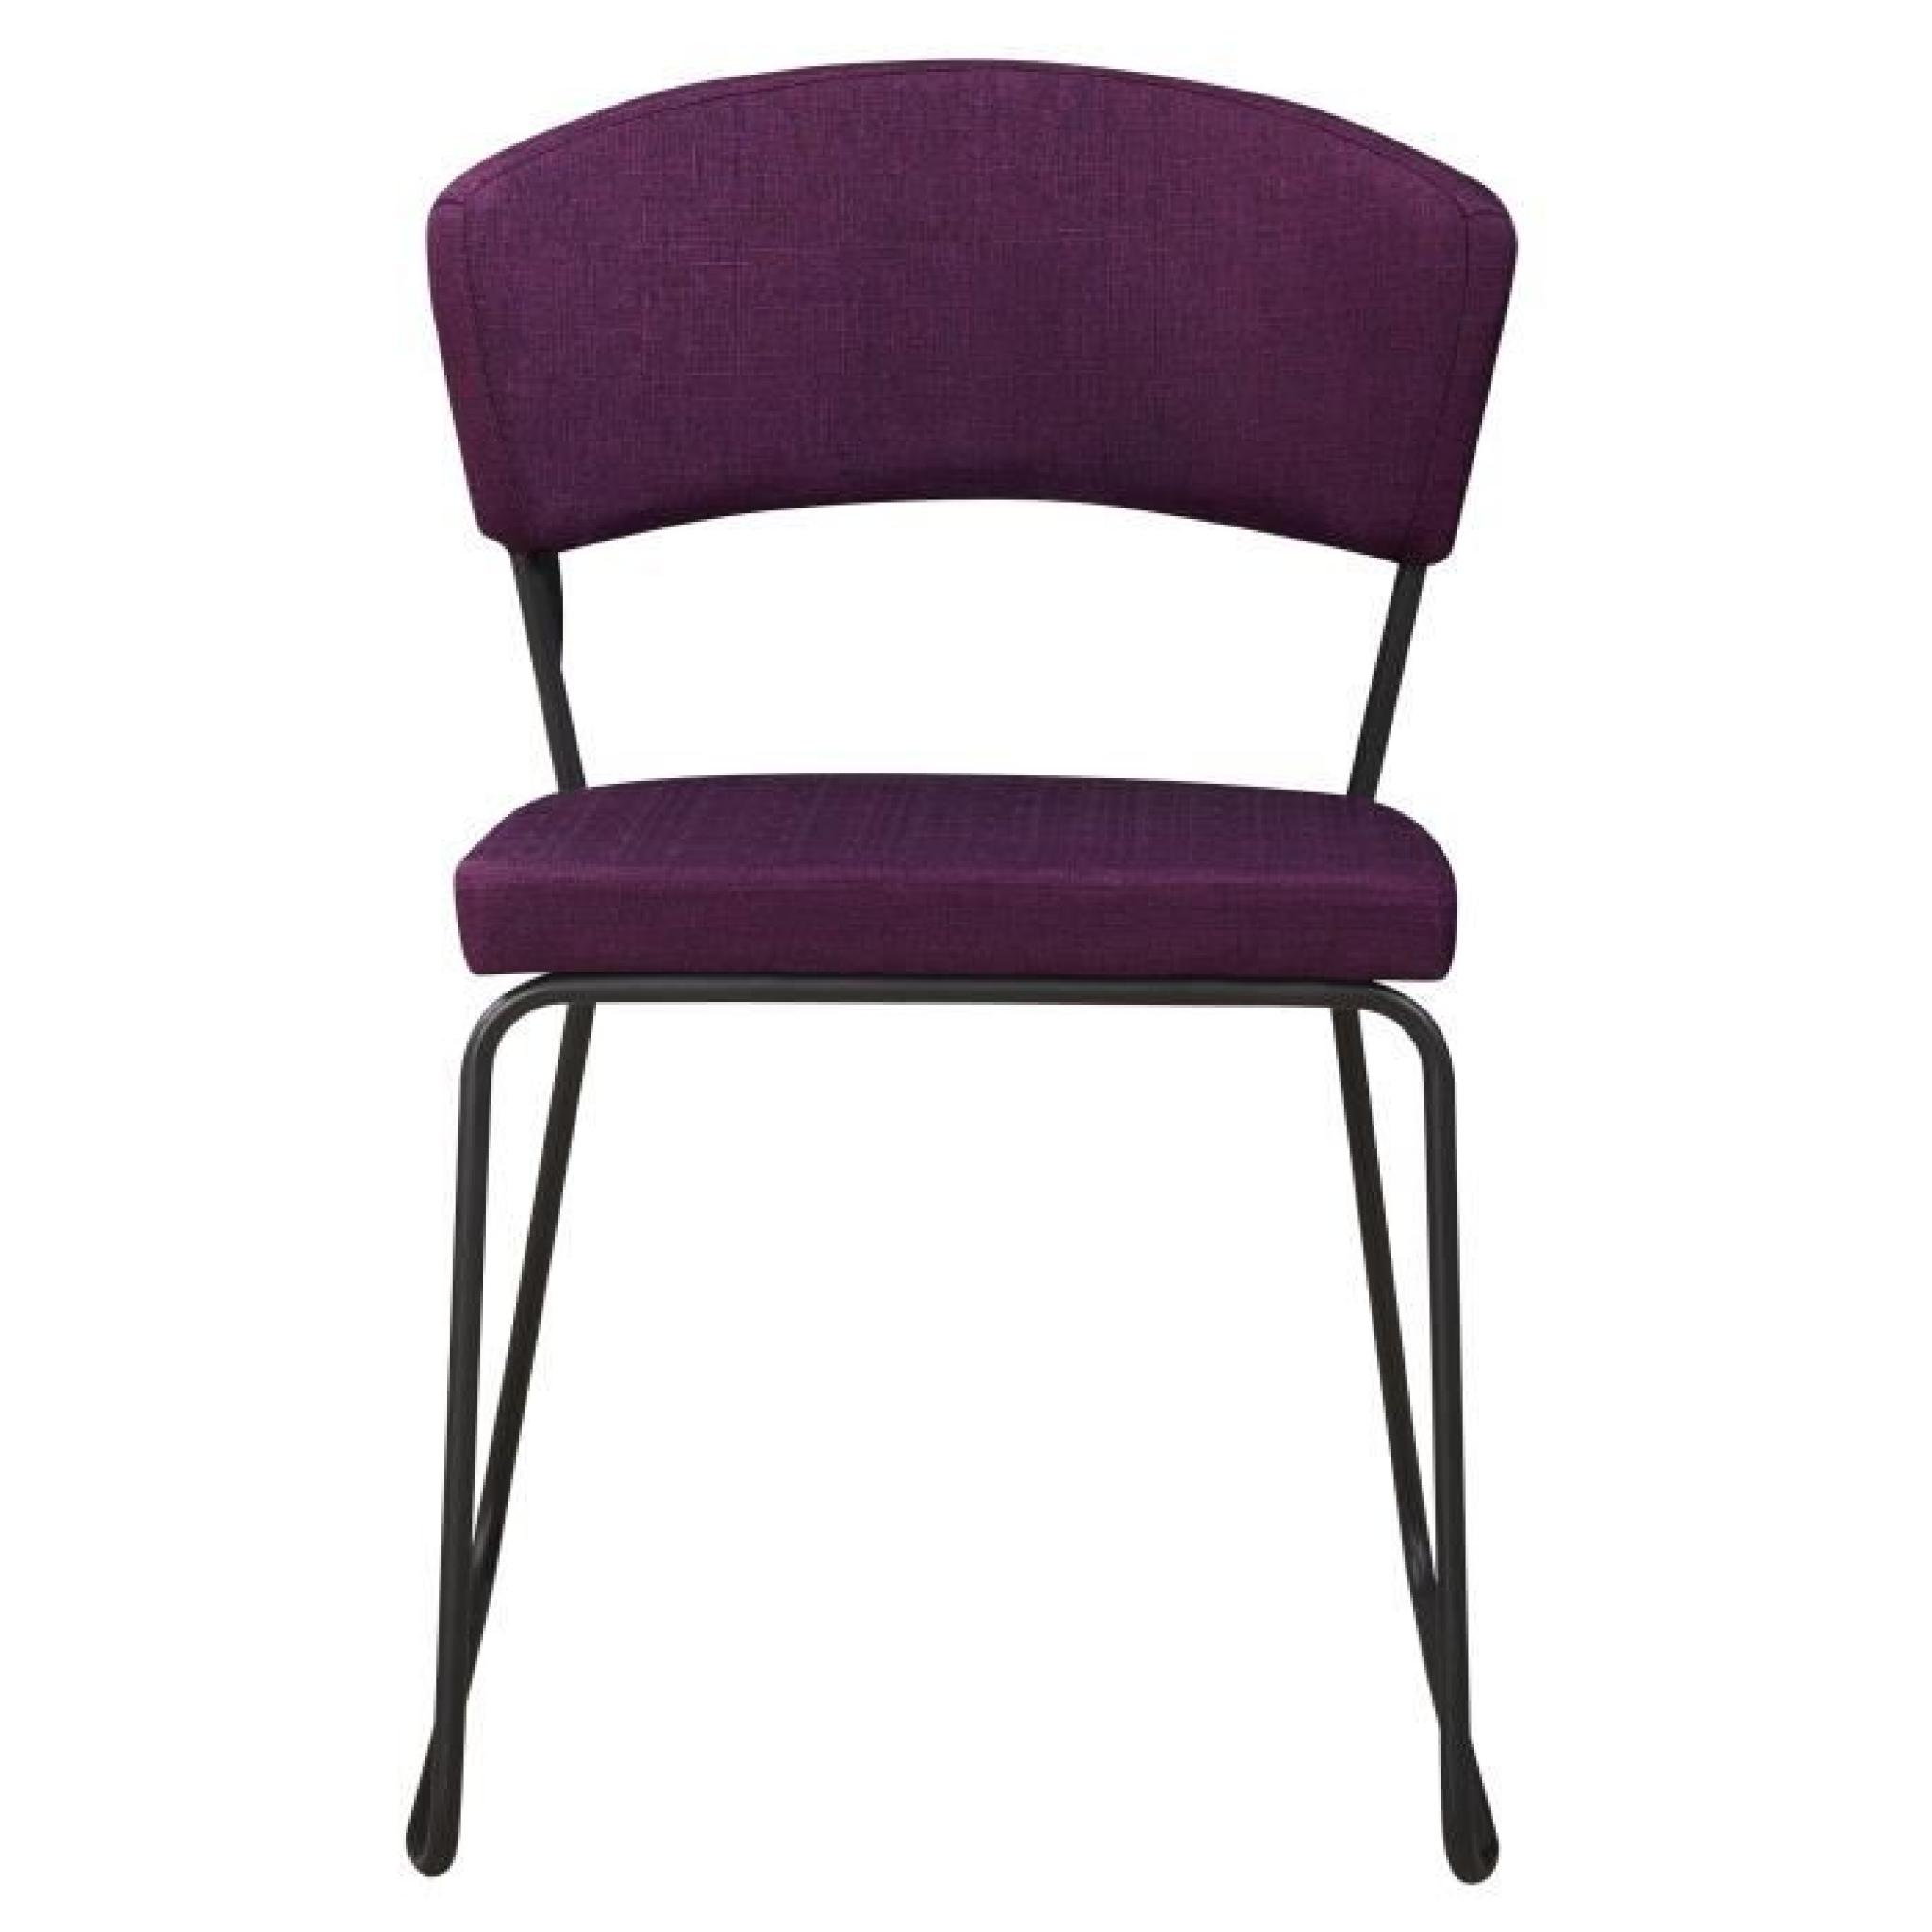 Chaise design minimaliste en tissus coloris prune pas cher